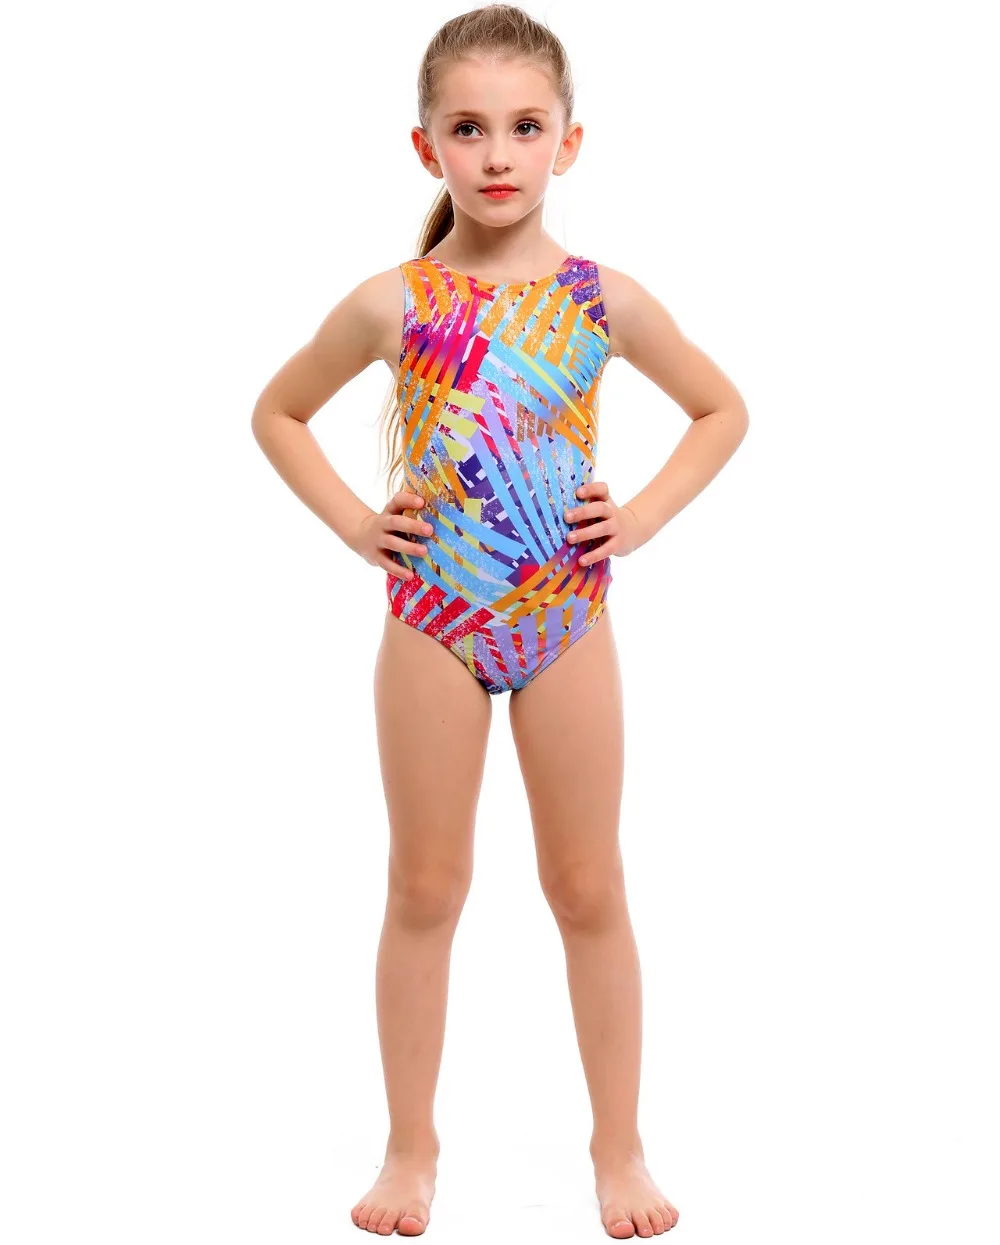 Профессиональный купальный костюм для детей с принтом, купальный костюм для девочек, цельный купальный костюм для подростков, детский купальный костюм, китайская фабрика